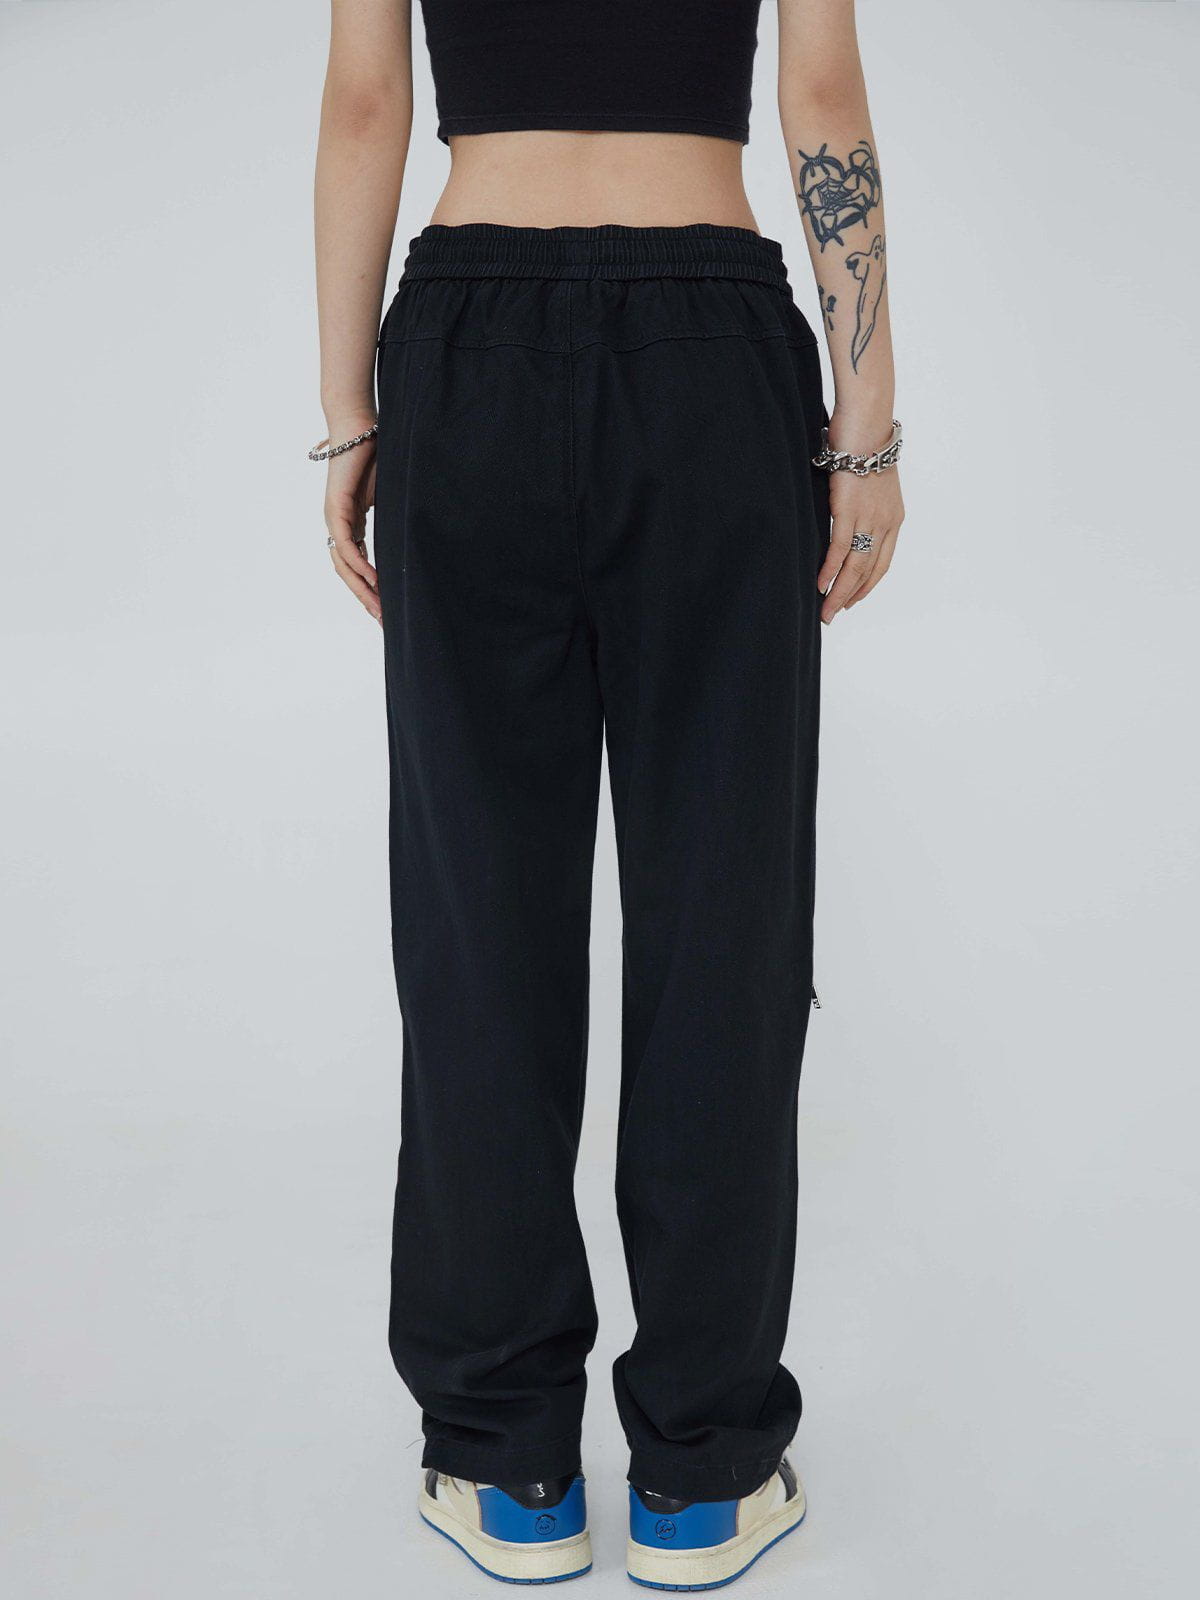 Majesda® - Zipper Stitching Pants outfit ideas streetwear fashion